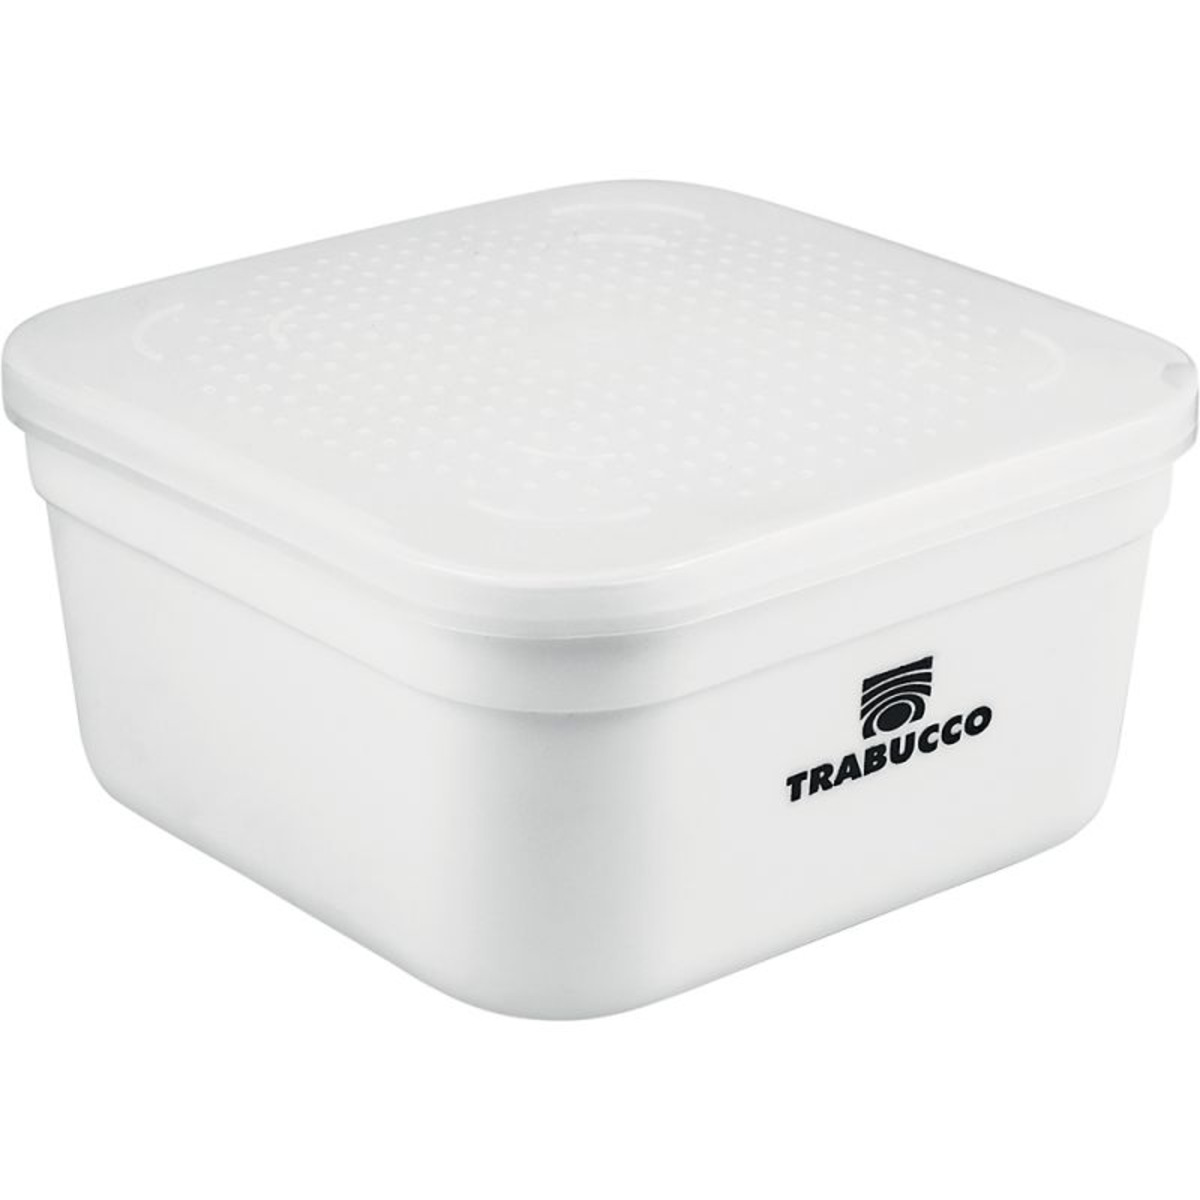 Trabucco Bait Box White - 1000 g 